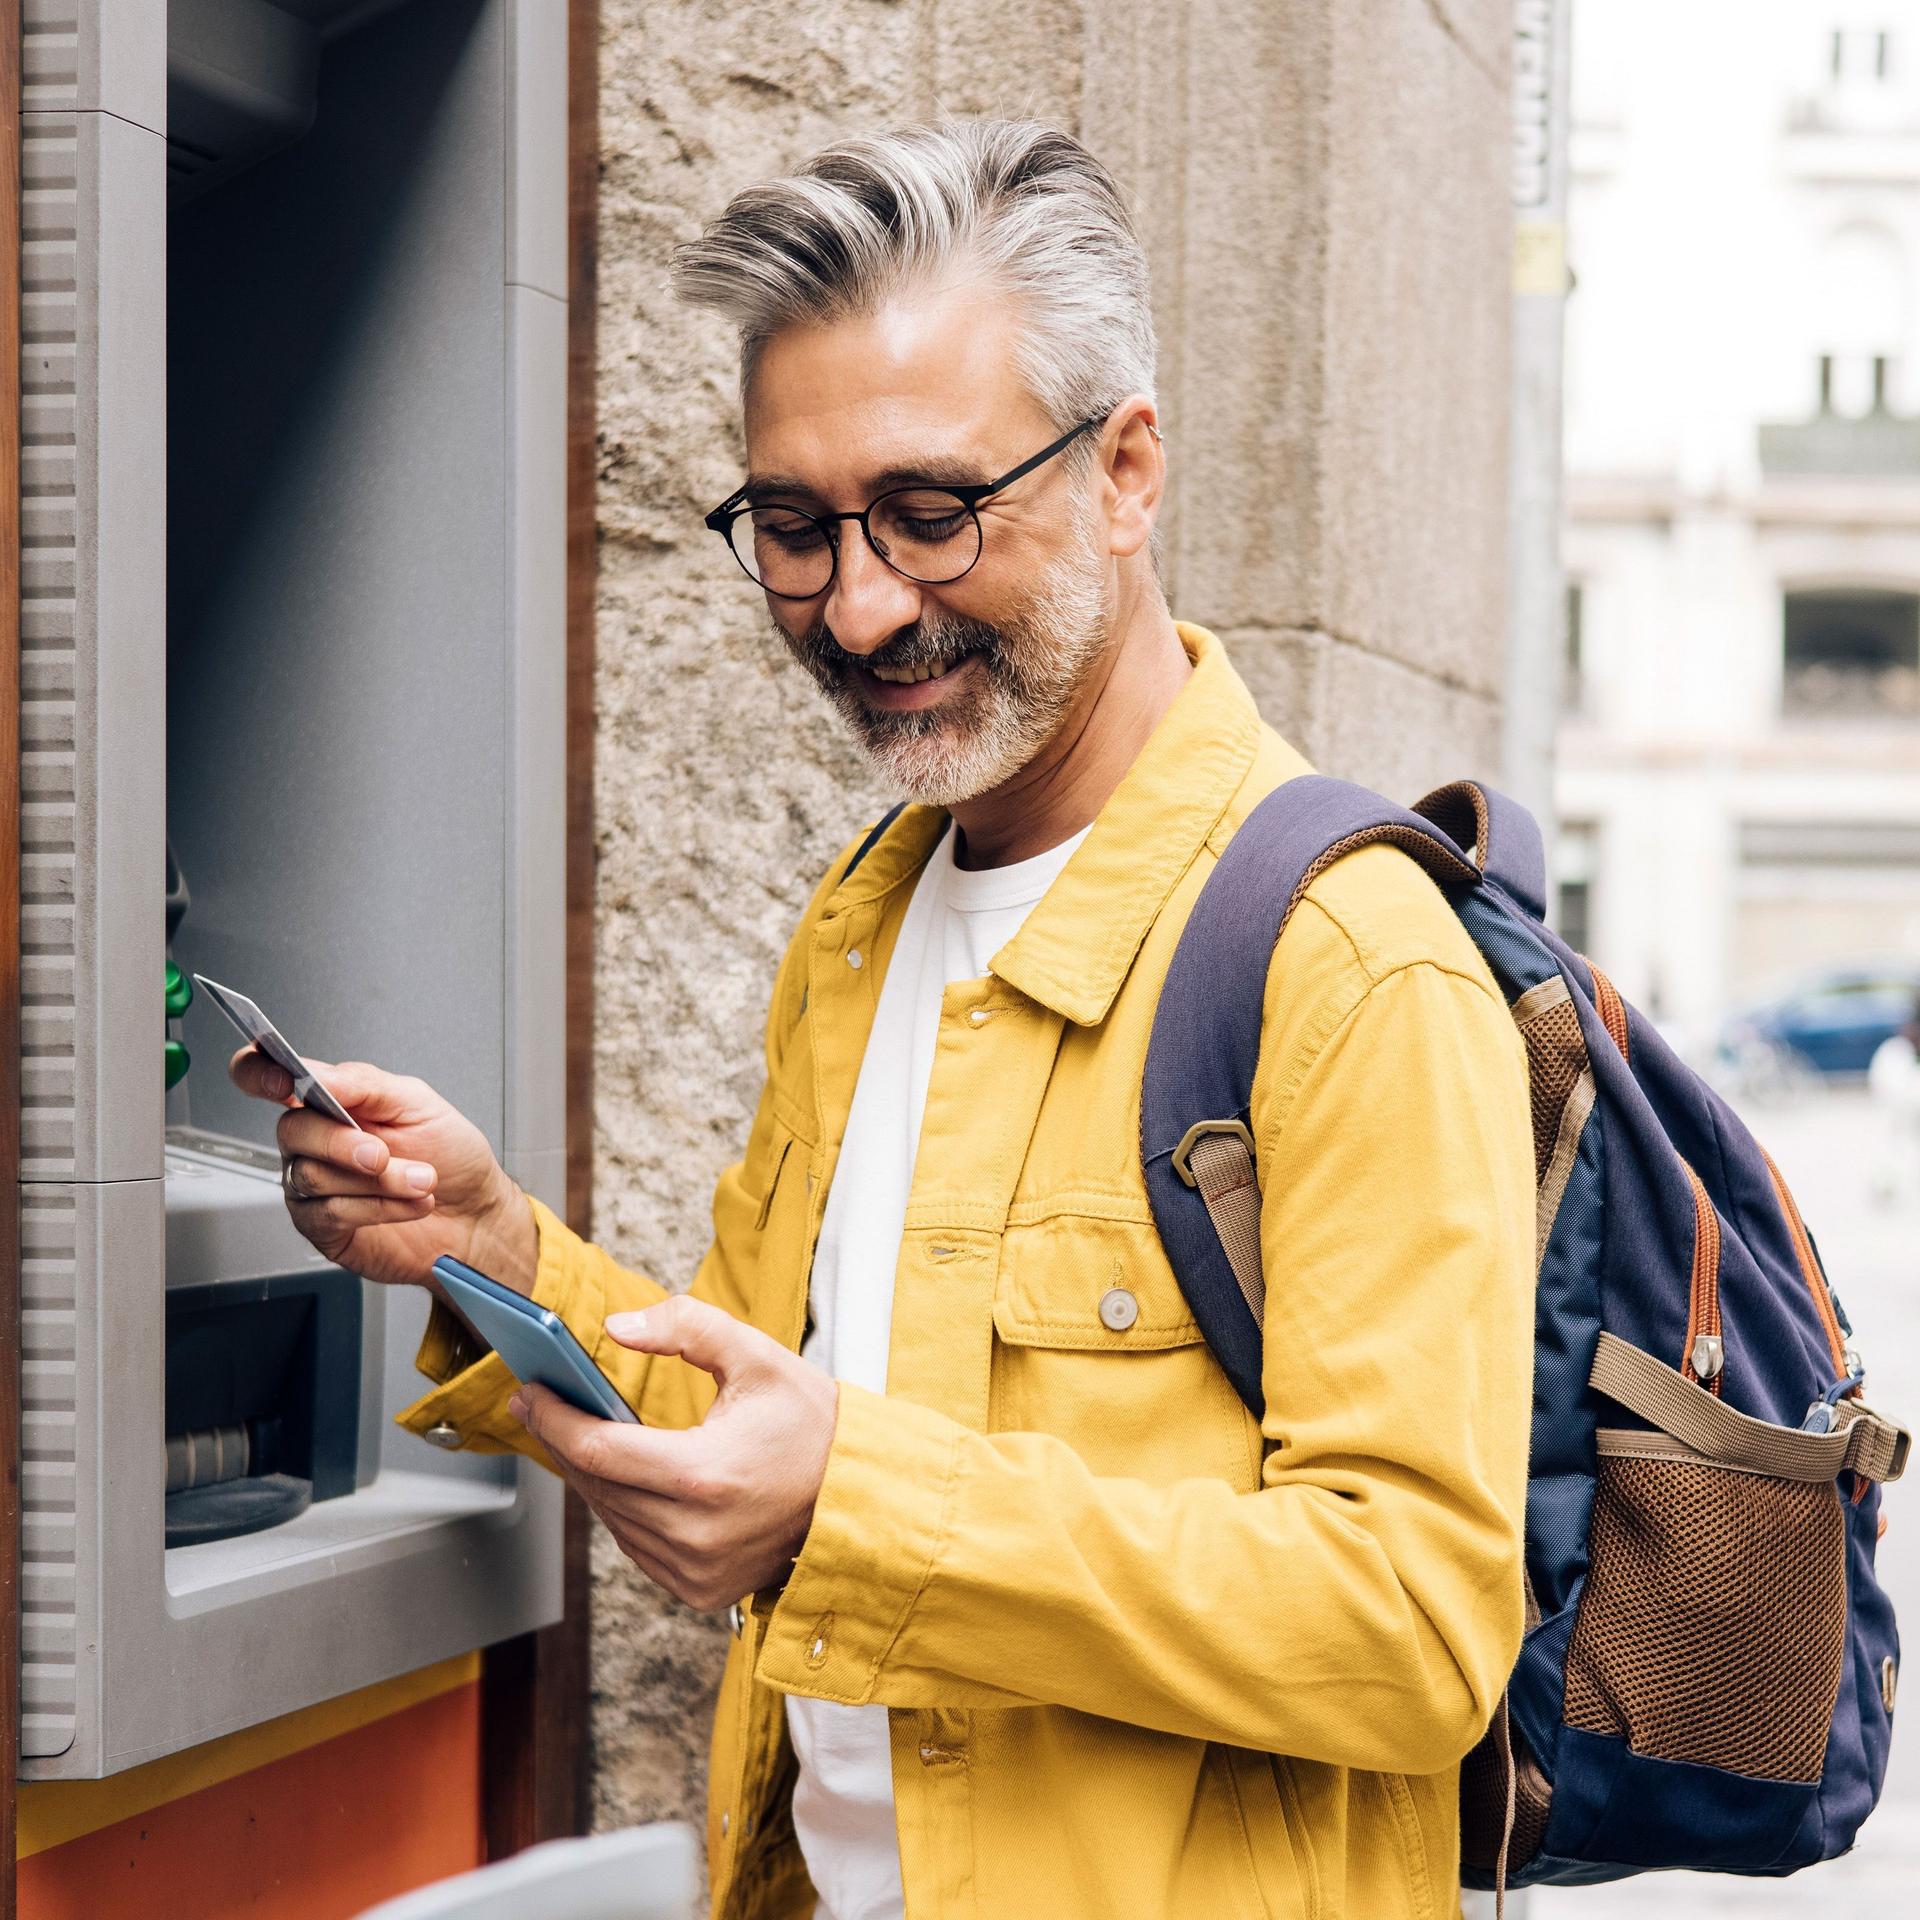 Mann mit grauen Haaren, Brille und gelber Jacke steht lächelnd vor einem Geldautomat. Er schaut auf sein Handy.